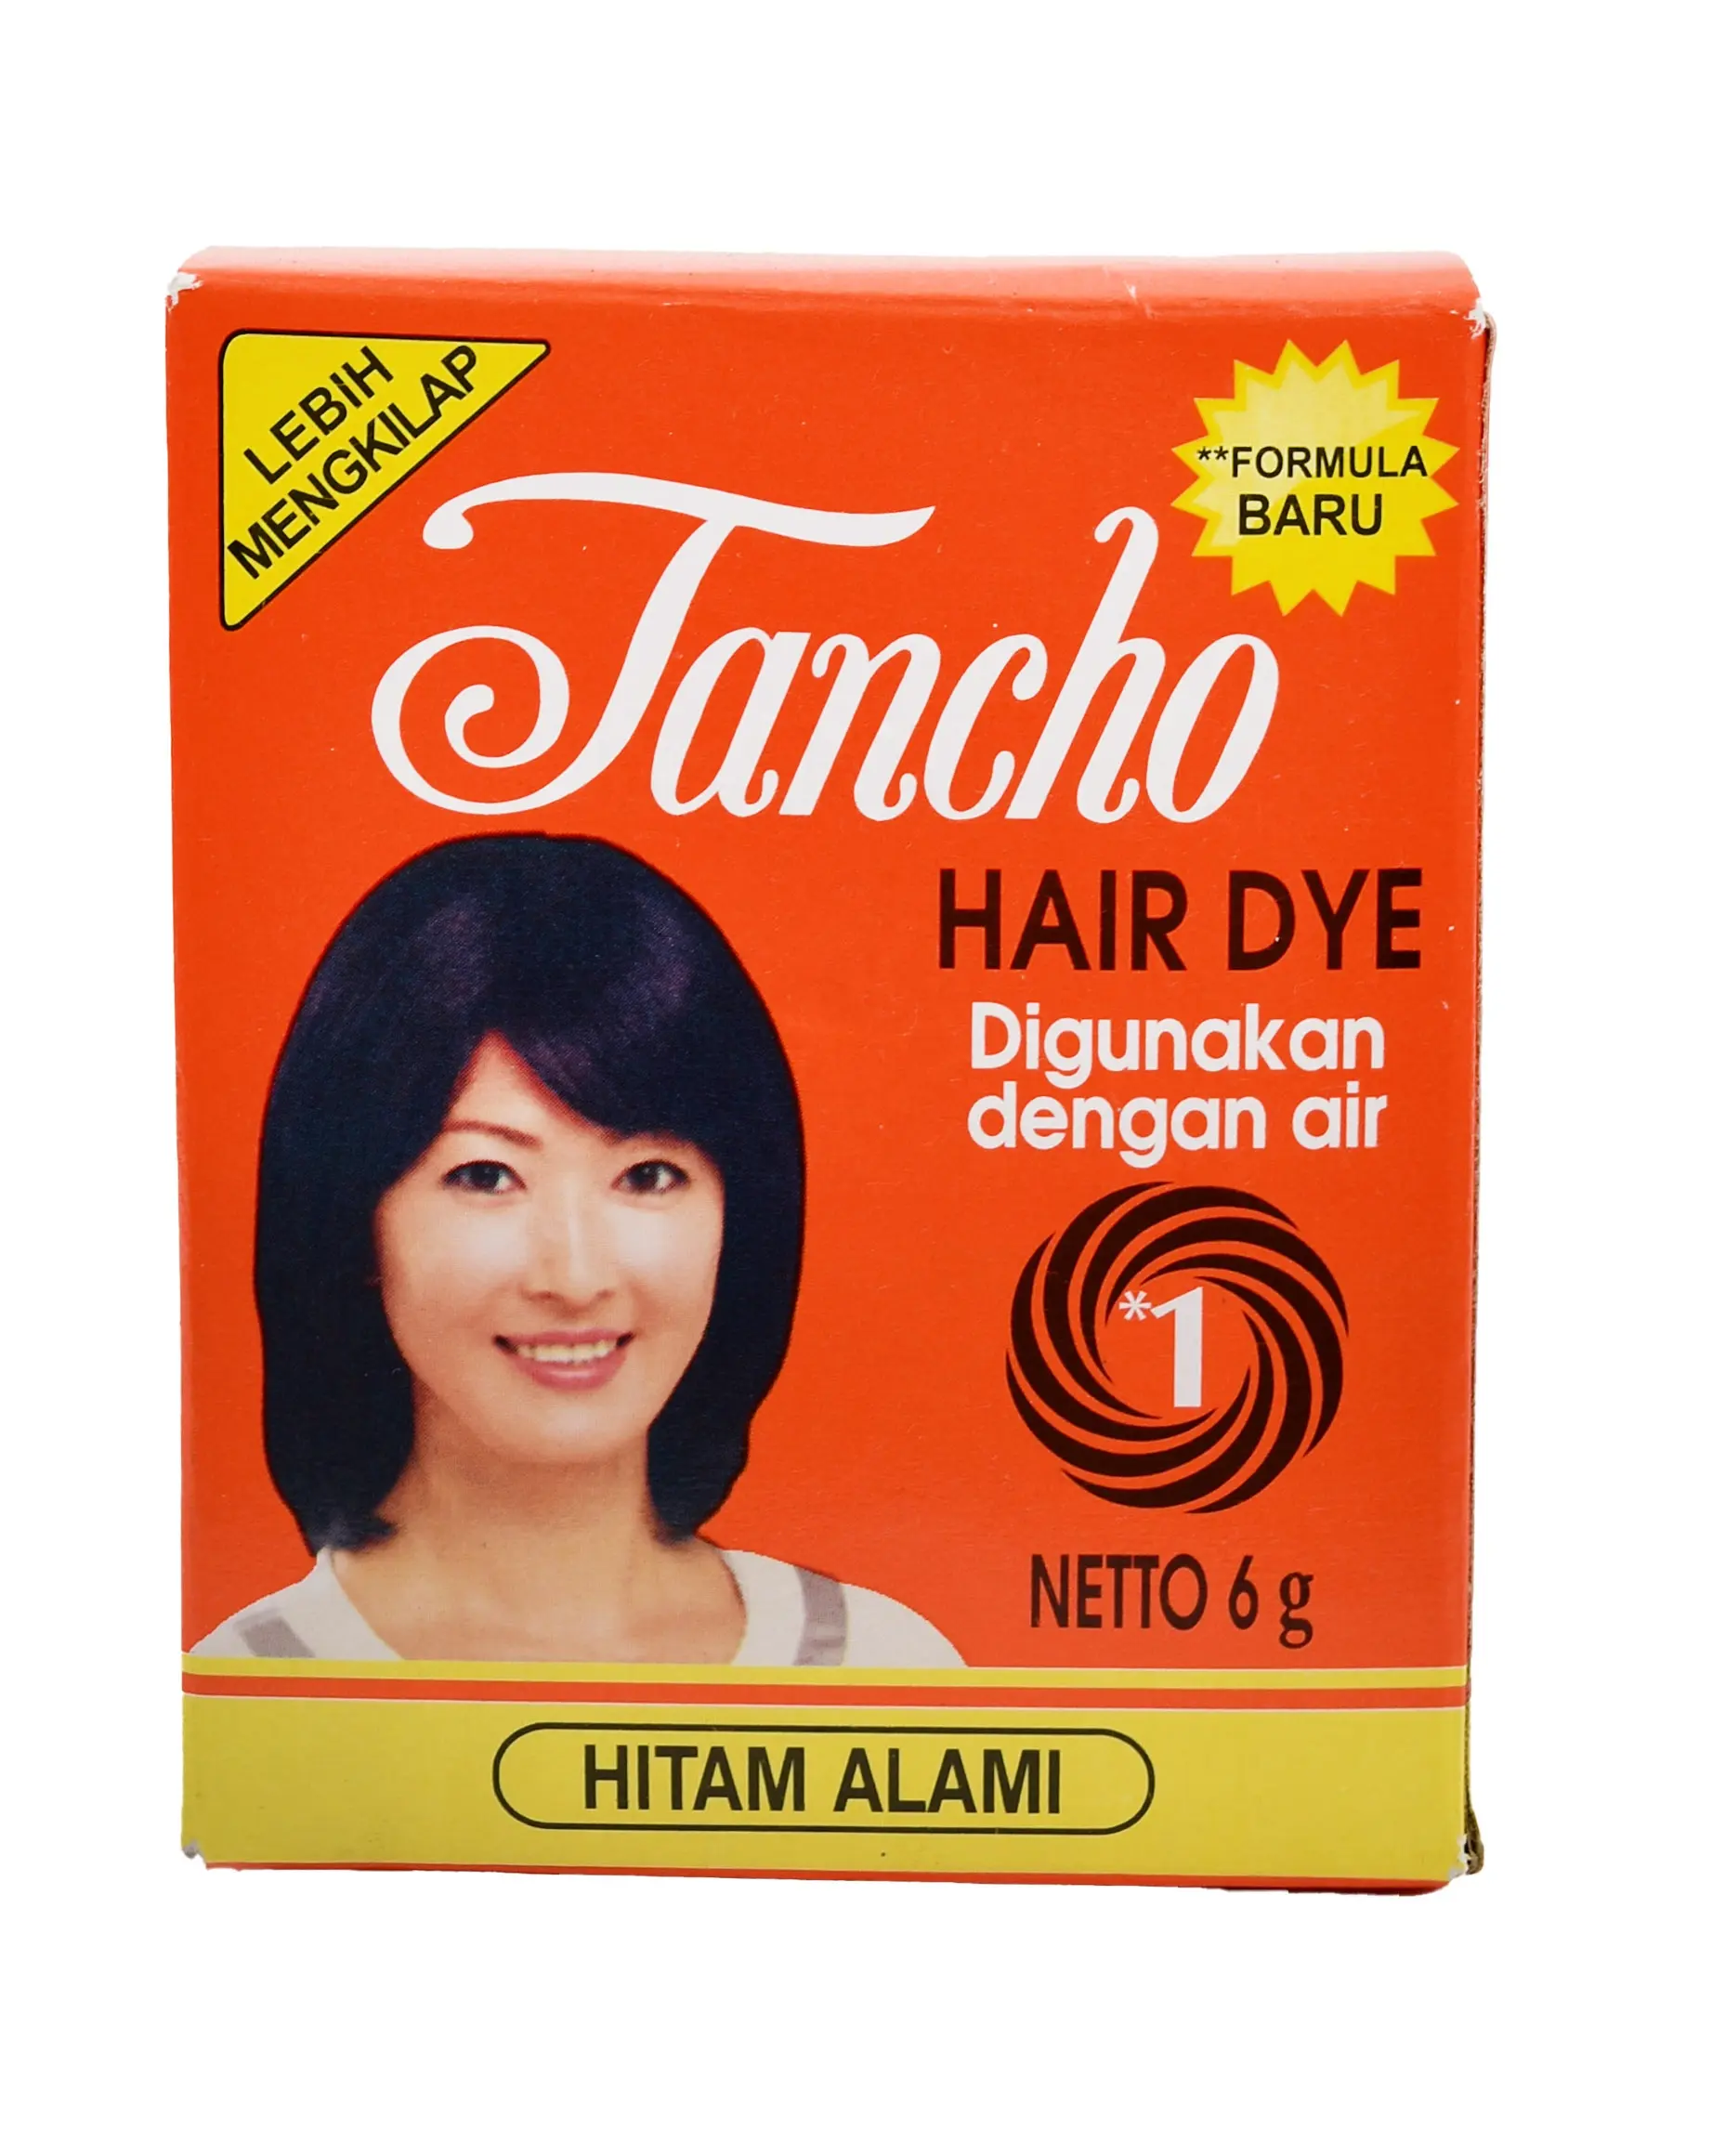 TANCHOヘアダイパウダーヘナ-インドネシアのオリジナル製品